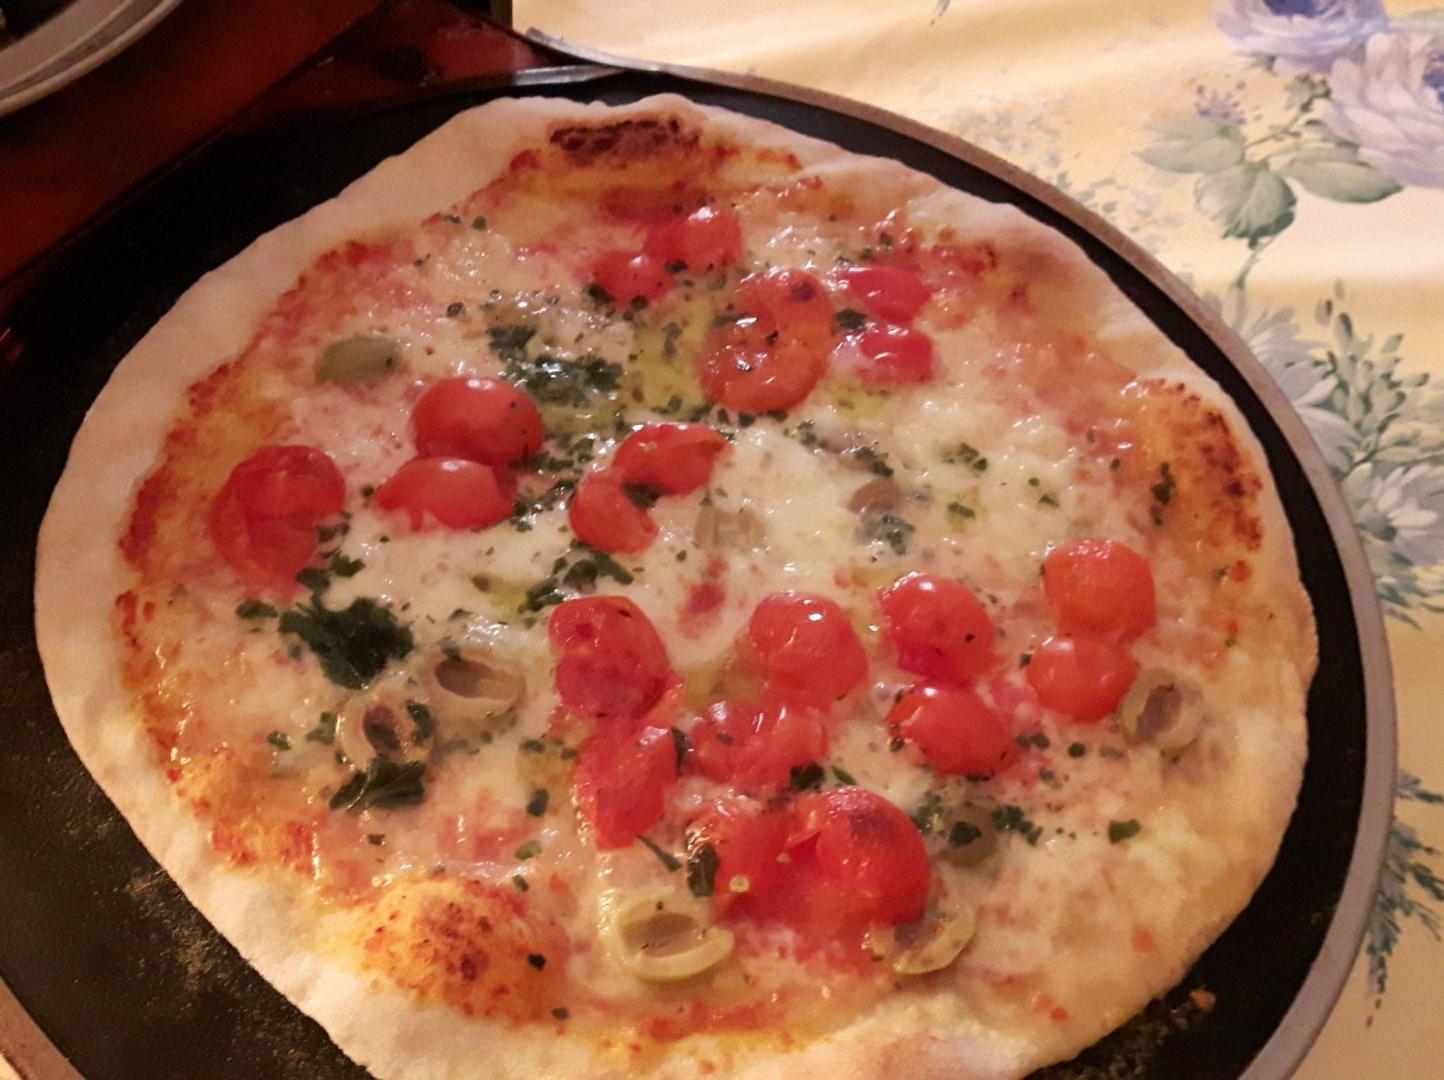 Pizza bufalina e pomodorini